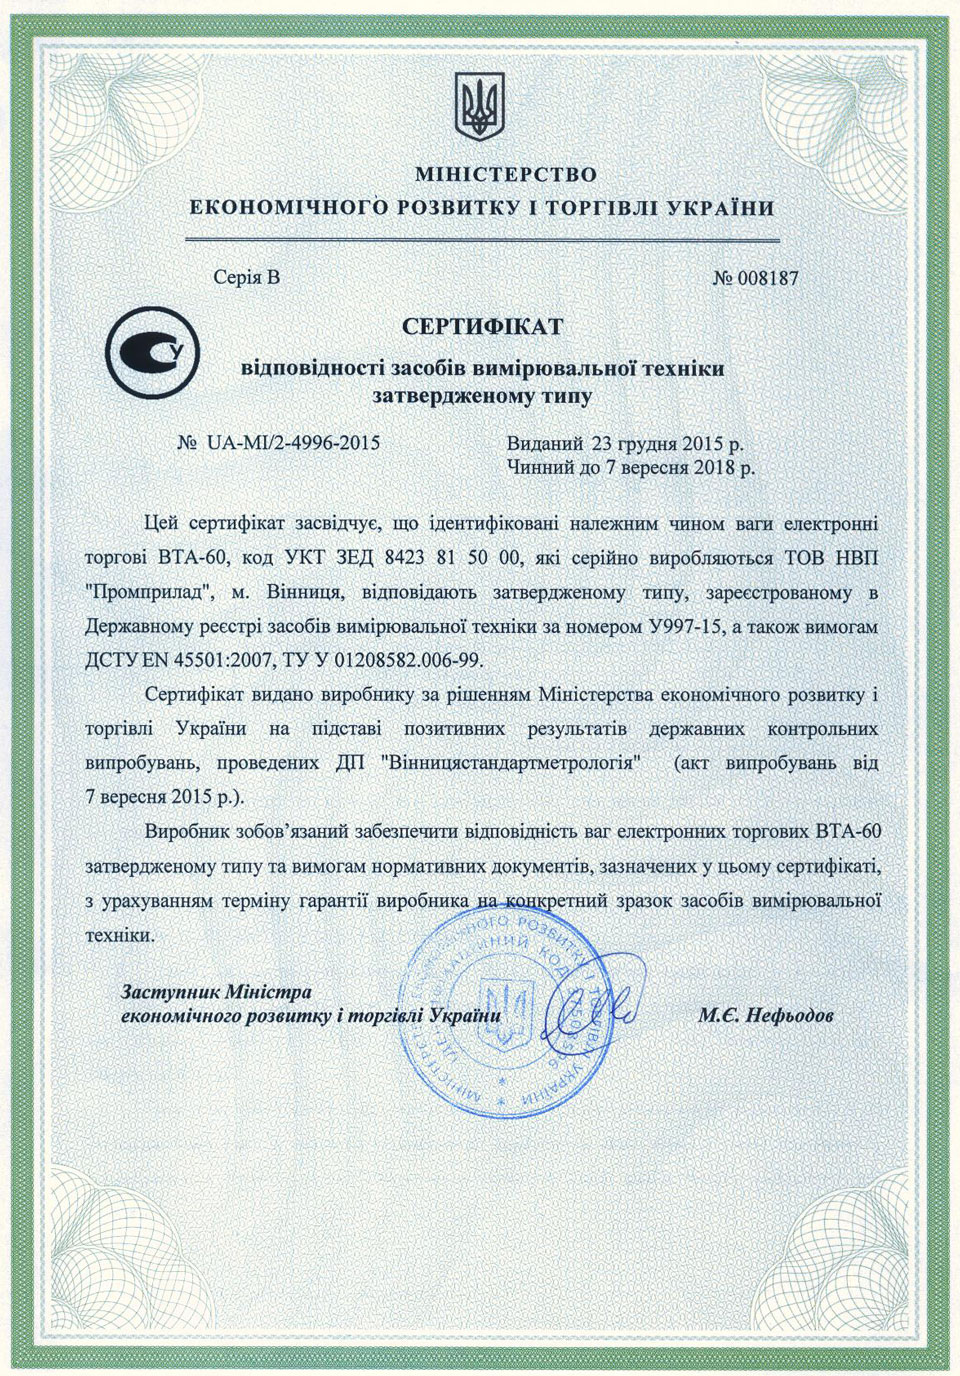 Сертификат на весы ВТА-60, Украина